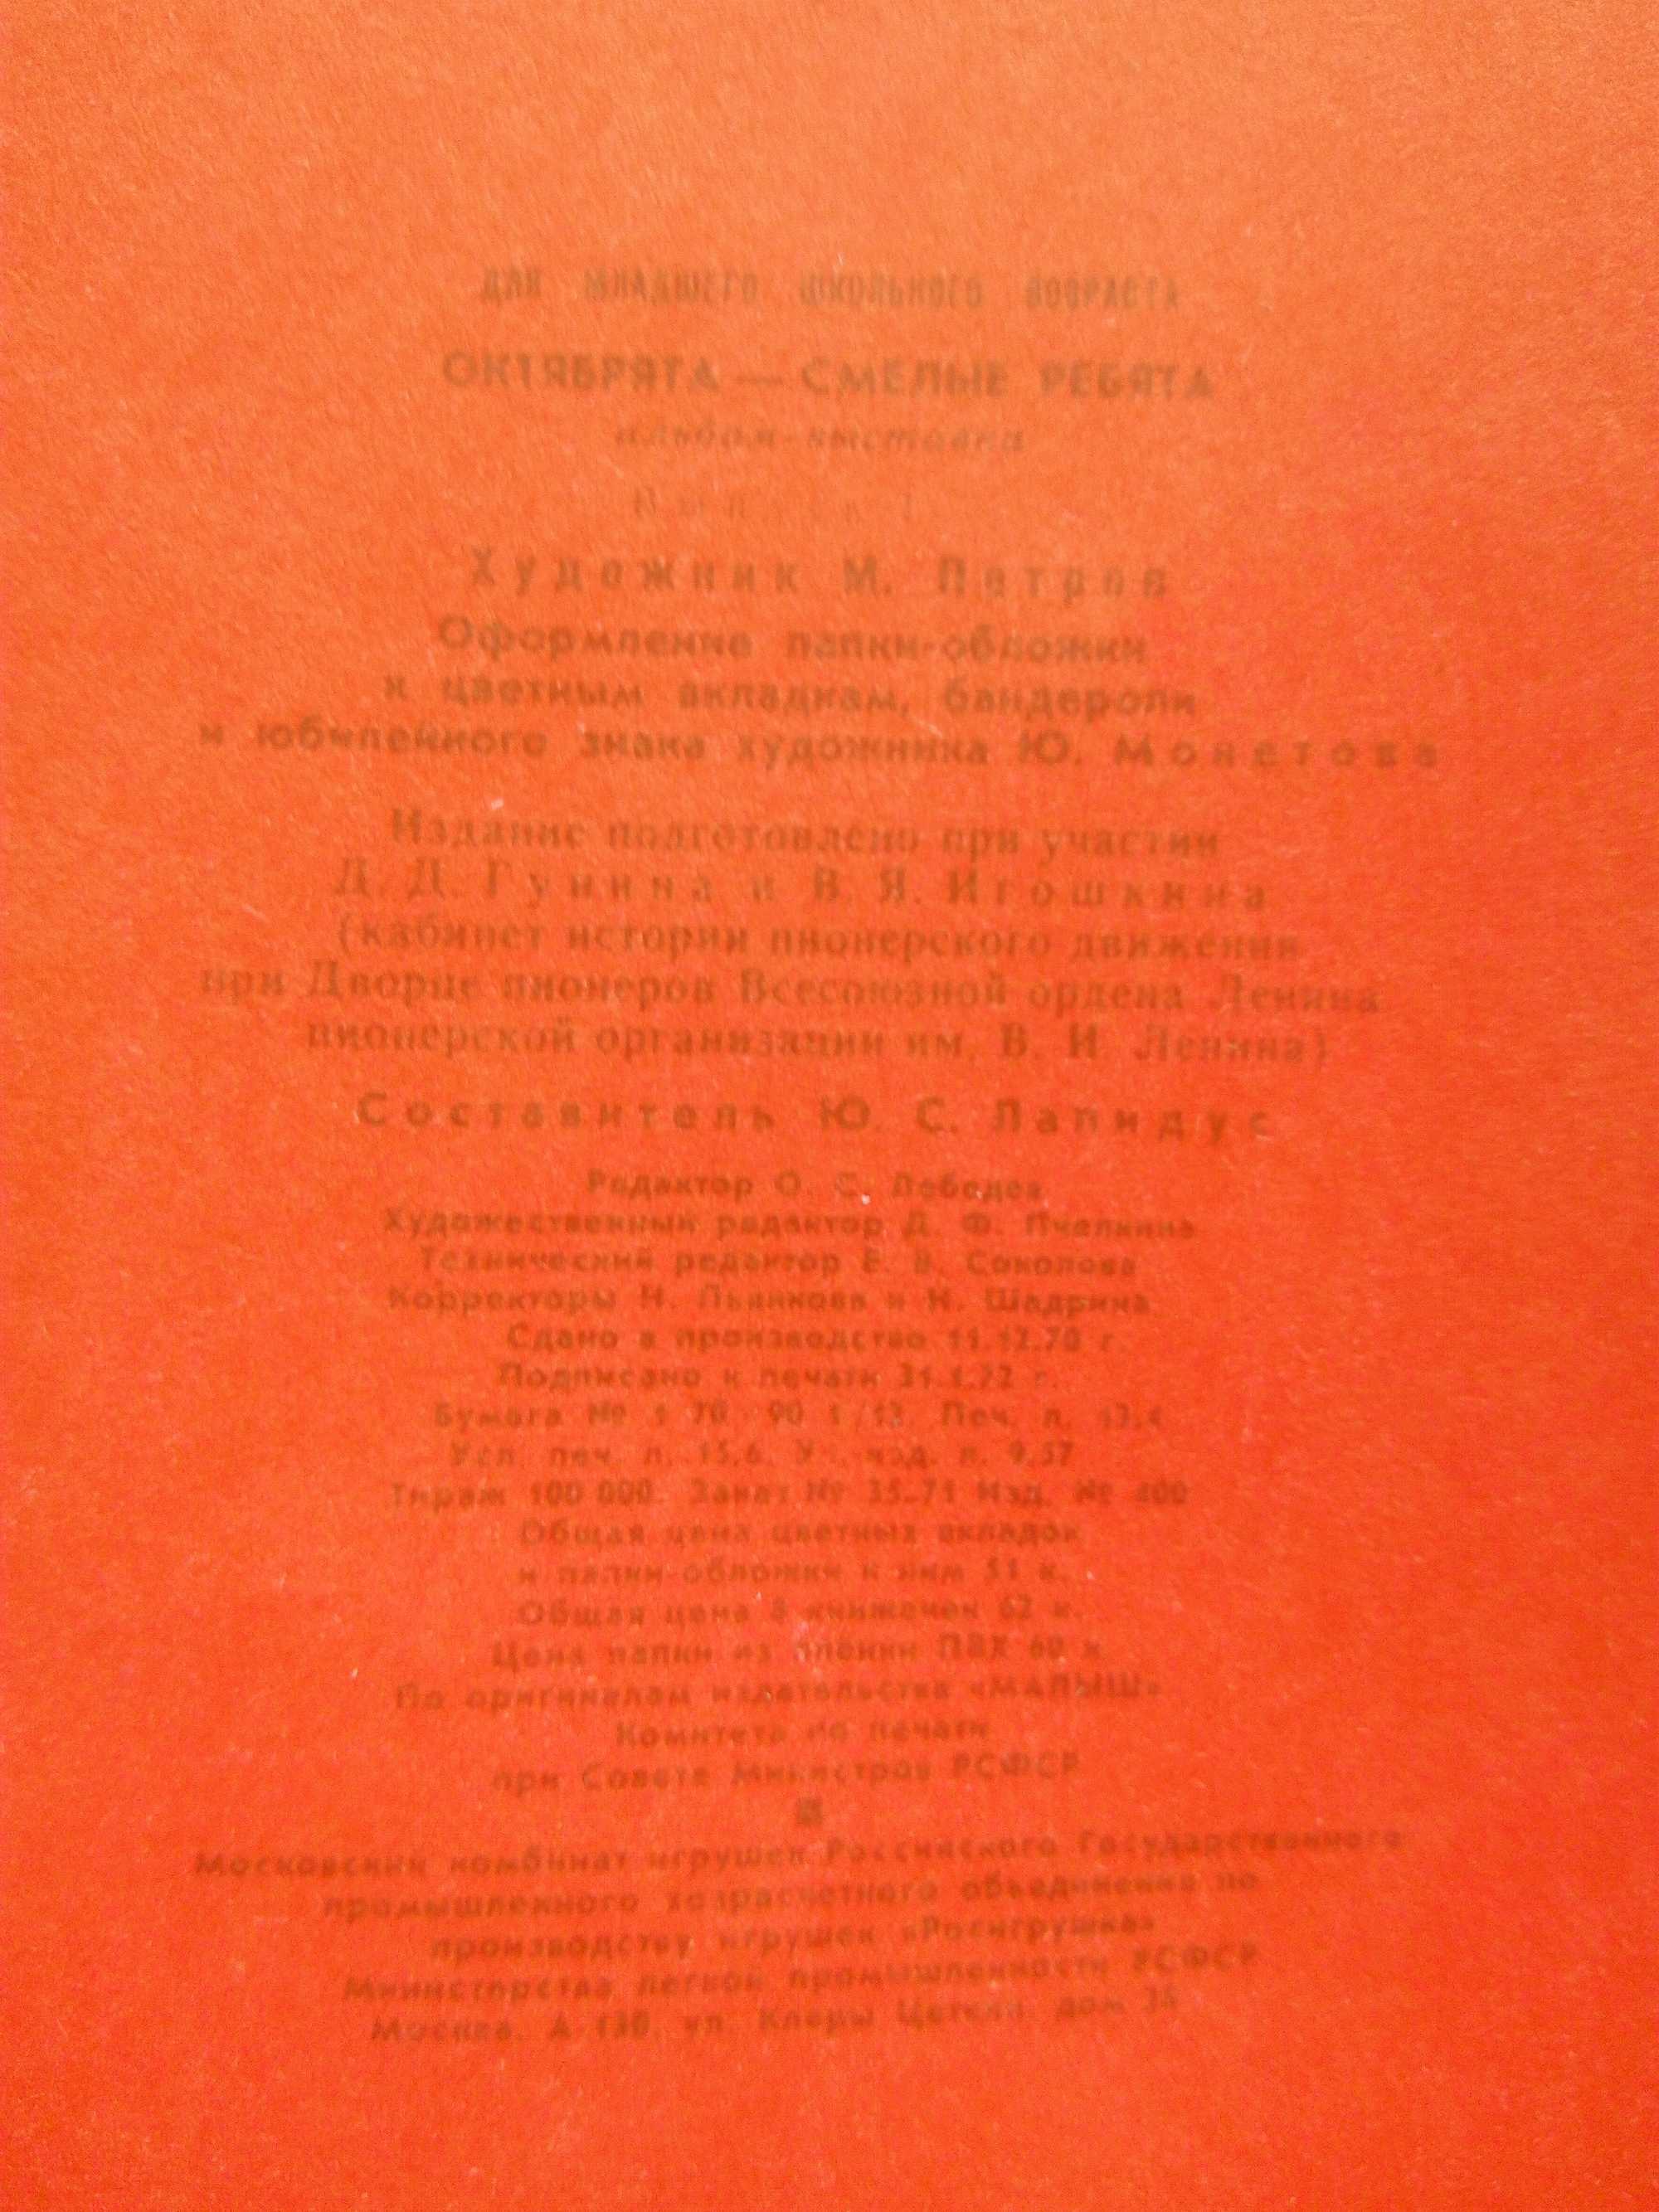 Альбом-выставка "Октябрята - смелые ребята". Комплект из 8 книг 1970 г